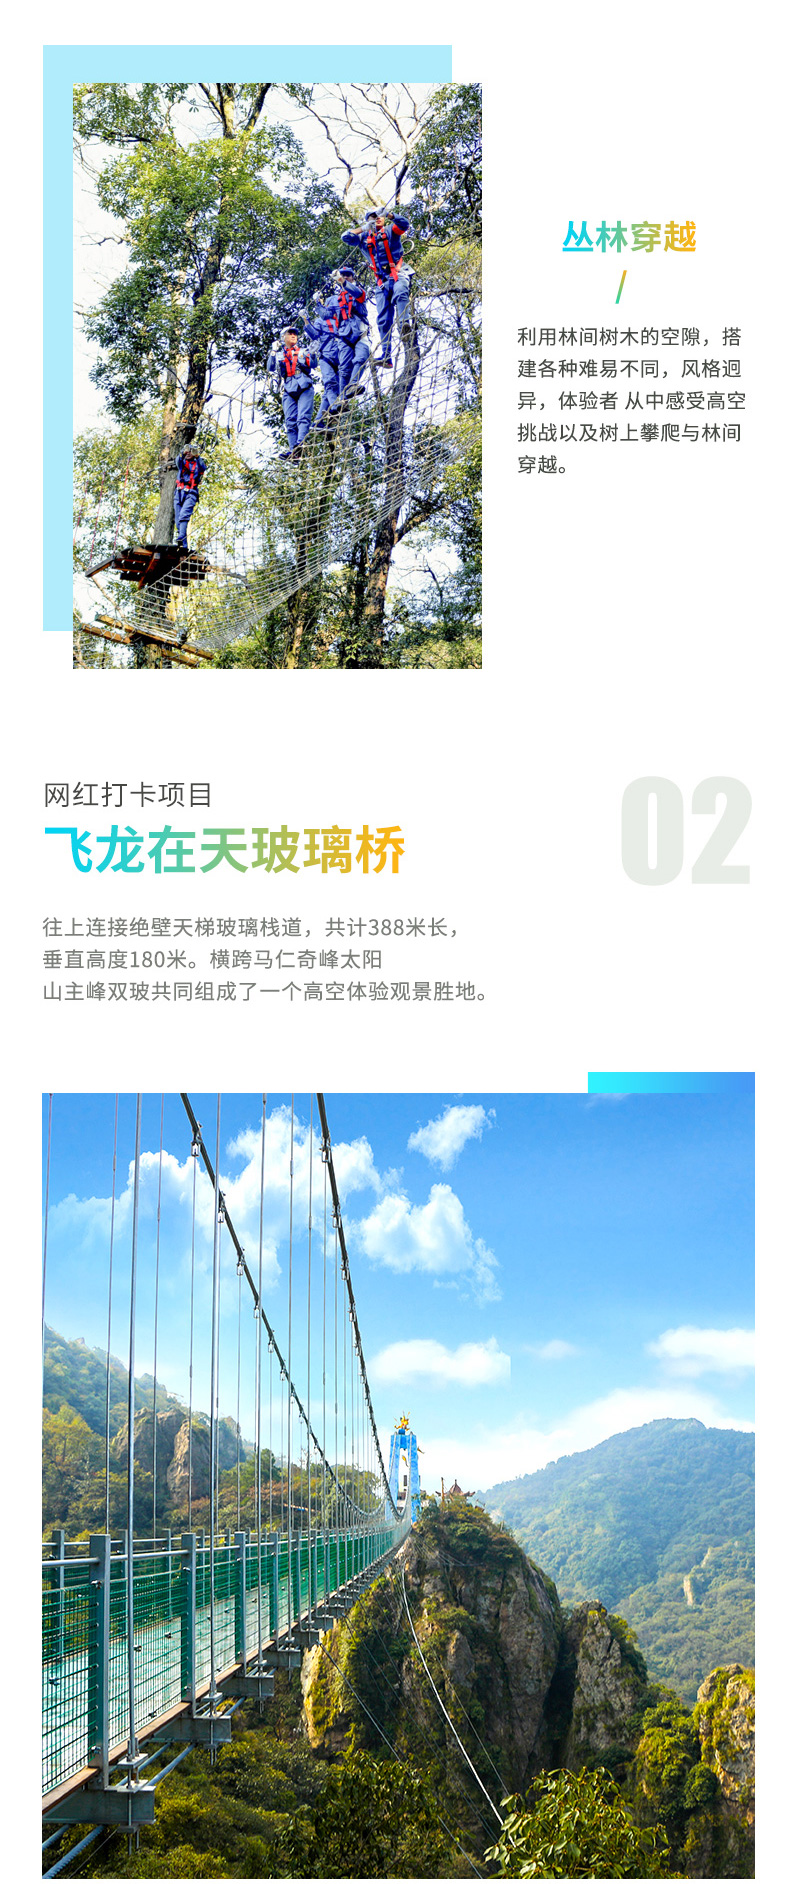 马仁奇峰门票安徽马仁奇峰森林公园门票挑战玻璃桥小黄山